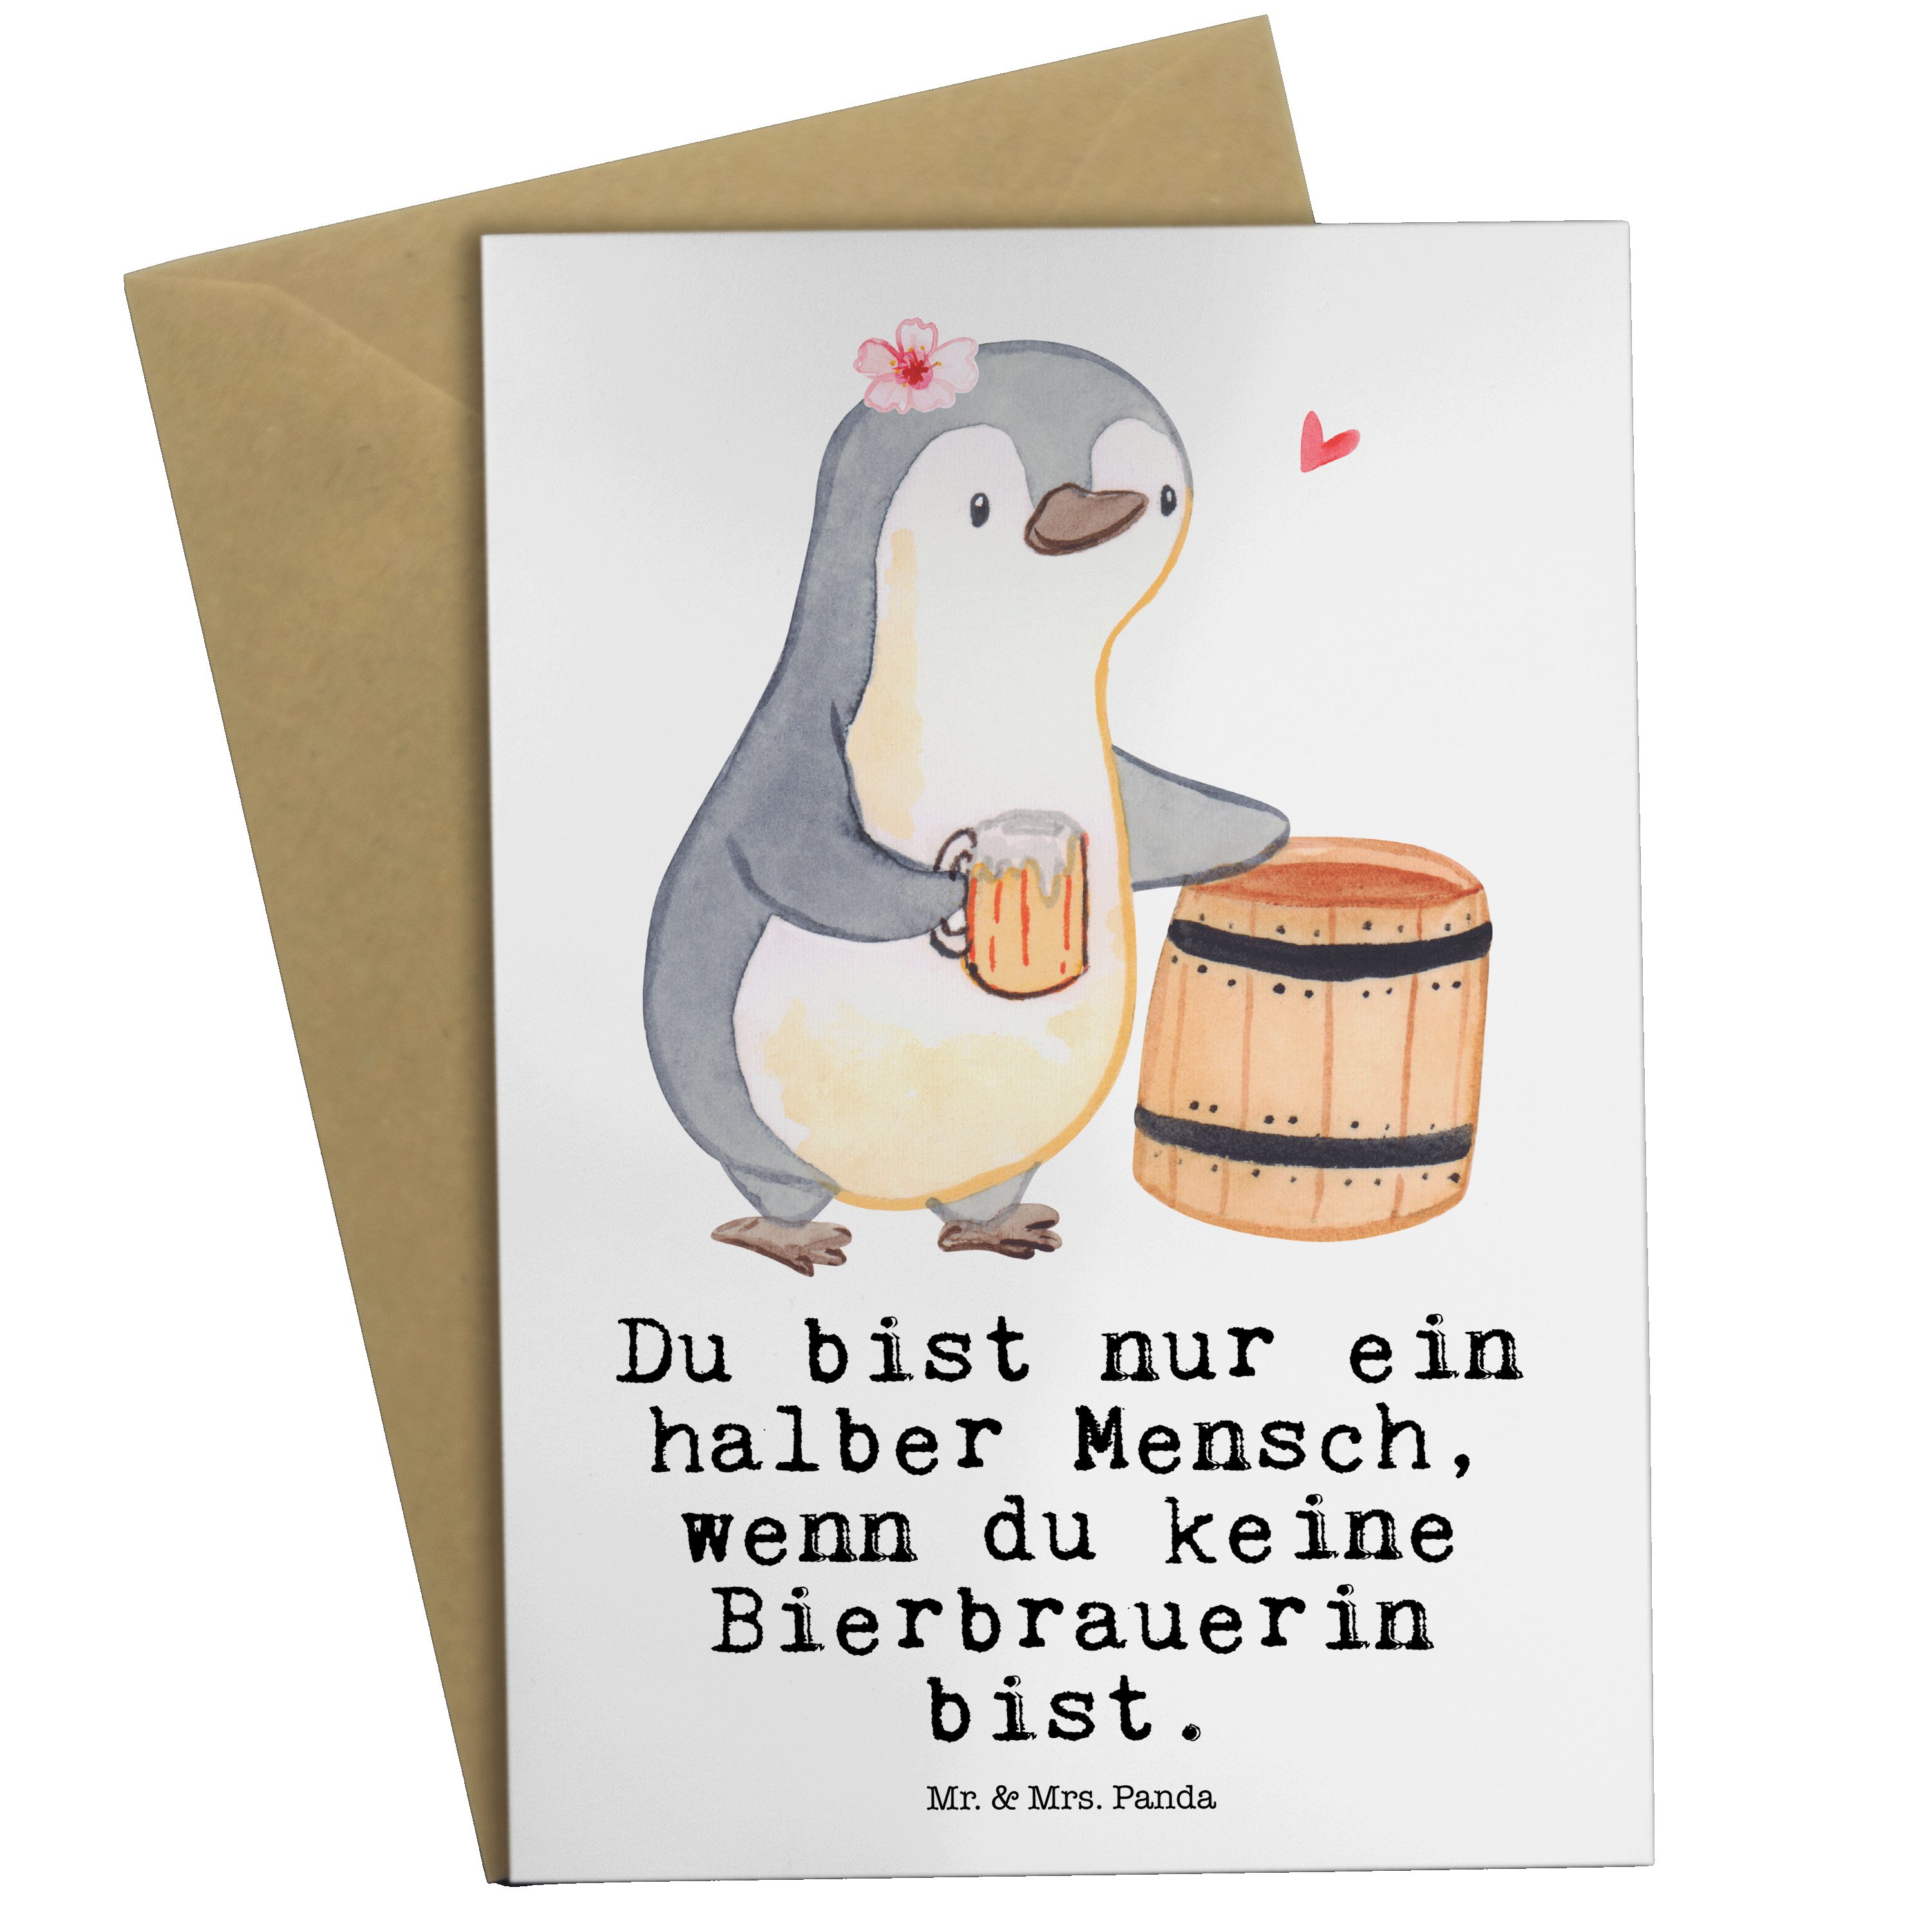 Mr. & Mrs. Panda Grußkarte Bierbrauerin mit Herz - Weiß - Geschenk, Danke, Bierliebe, Arbeitskol